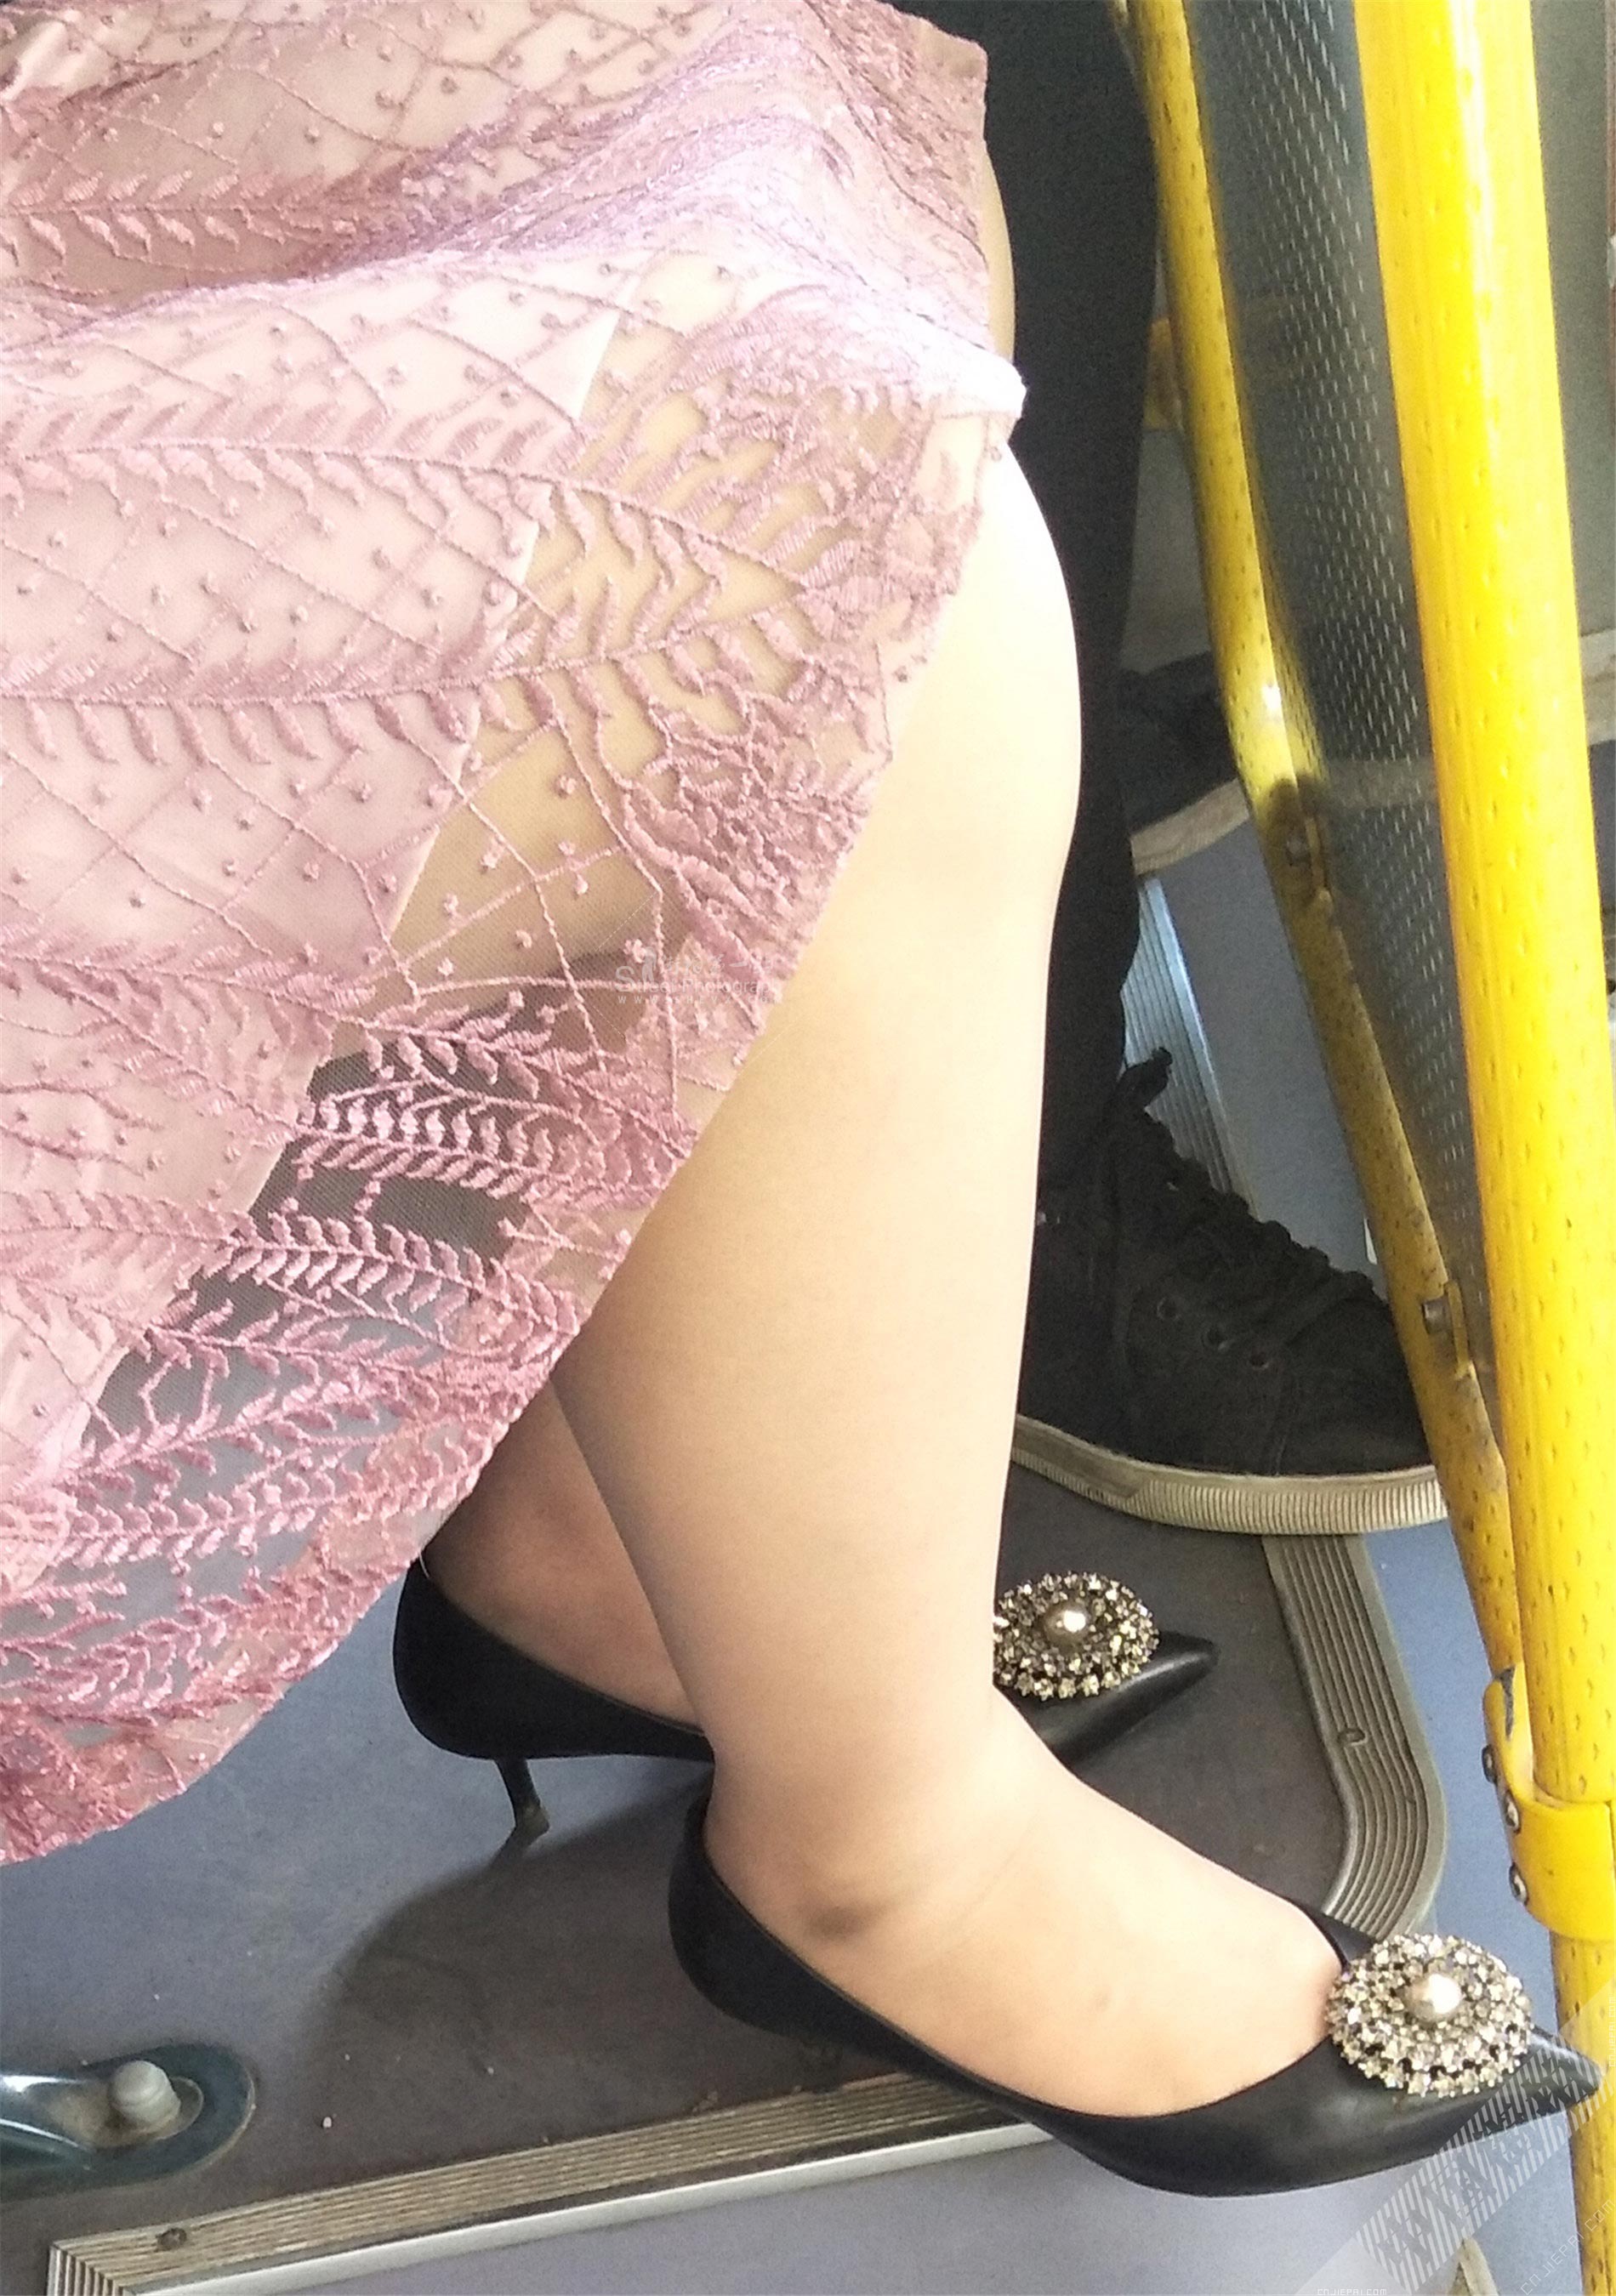 公交车上少妇的超薄肉丝美腿 图2